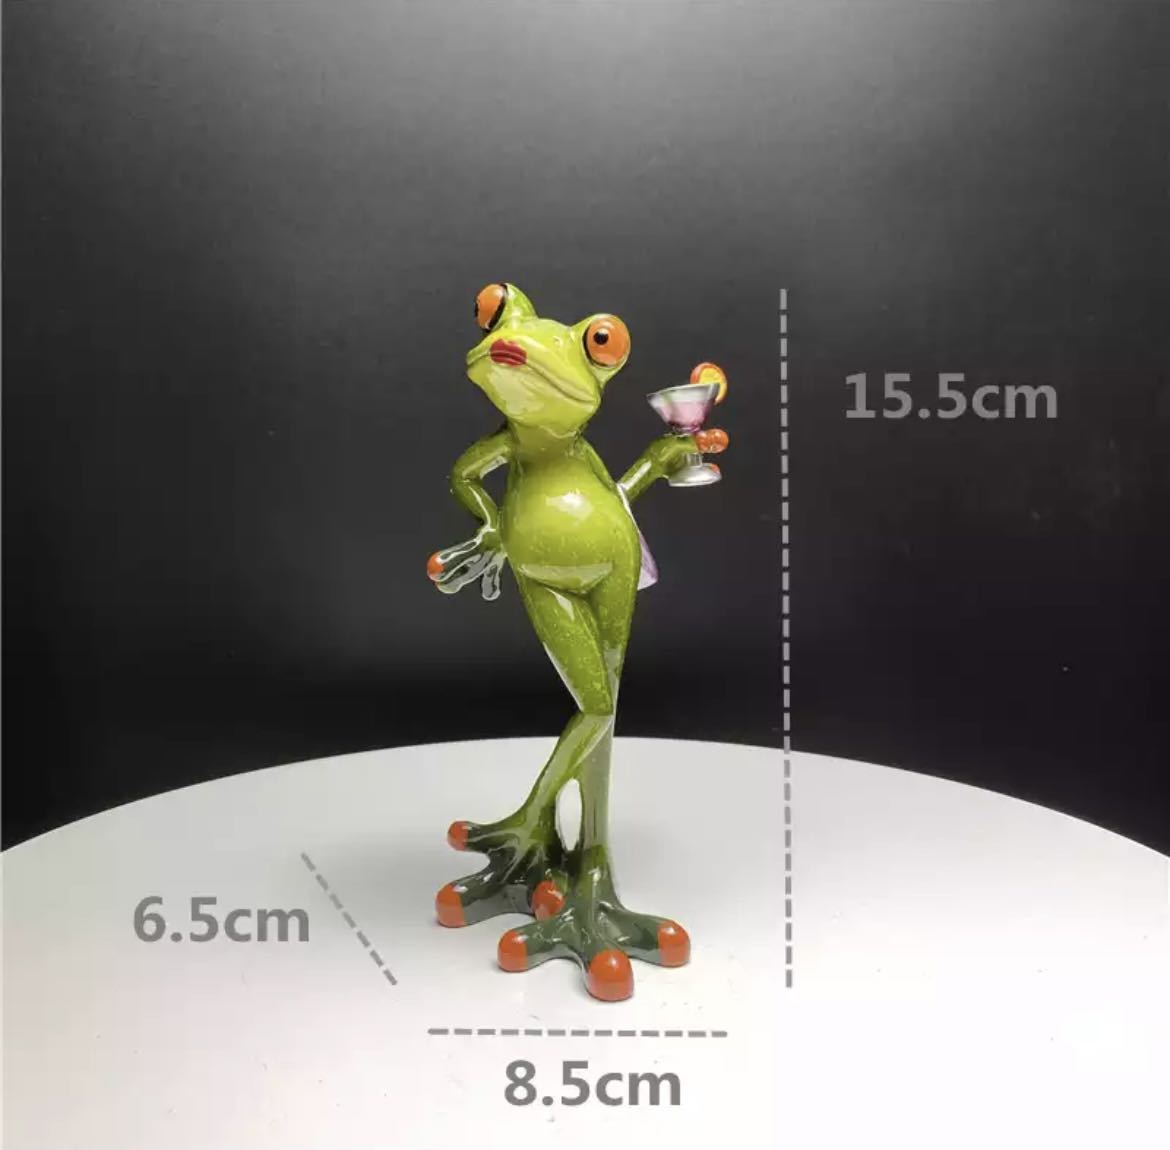 개구리 인형 레진 개구리 인형 장식물 인테리어 용품 인형 소품 상품 독특하고 귀여운 장식 칵테일 1560, 핸드메이드 아이템, 내부, 잡화, 장식, 물체